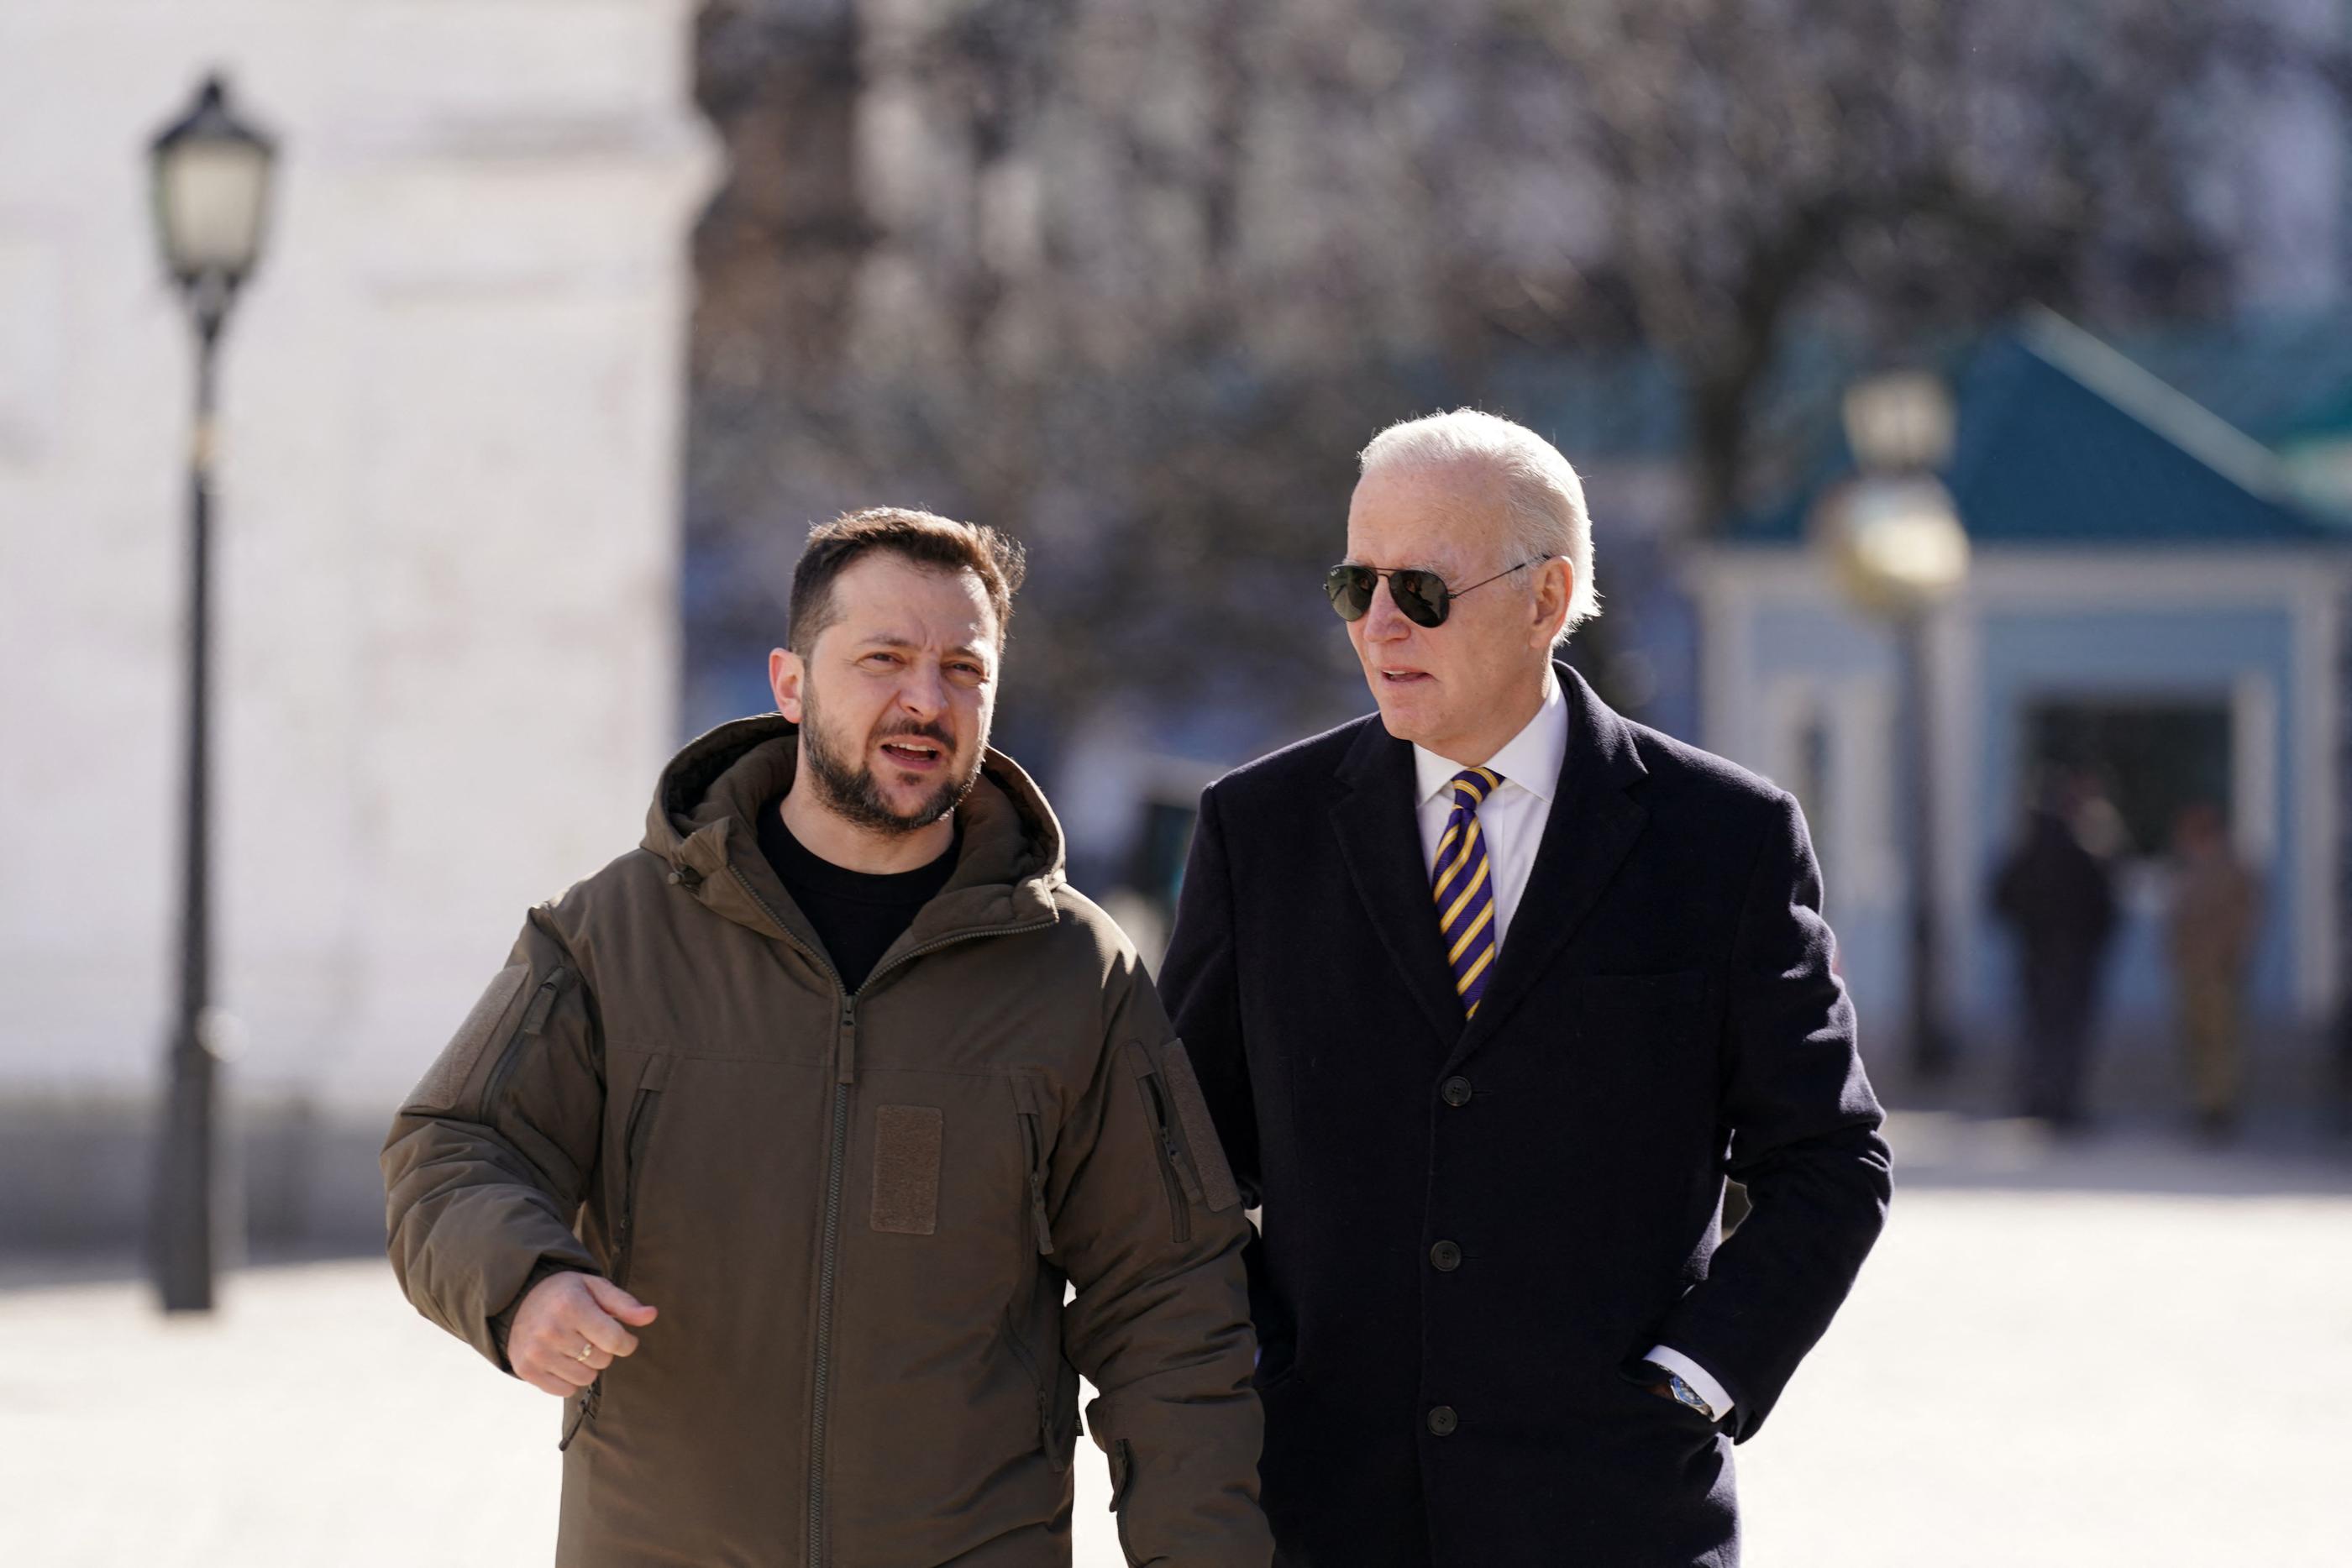 Le président américain Joe Biden a promis lundi, dans un coup de fil au président ukrainien Volodymyr Zelensky, de lui faire parvenir « rapidement » des aides militaires « importantes ». AFP/Dimitar Dilkoff